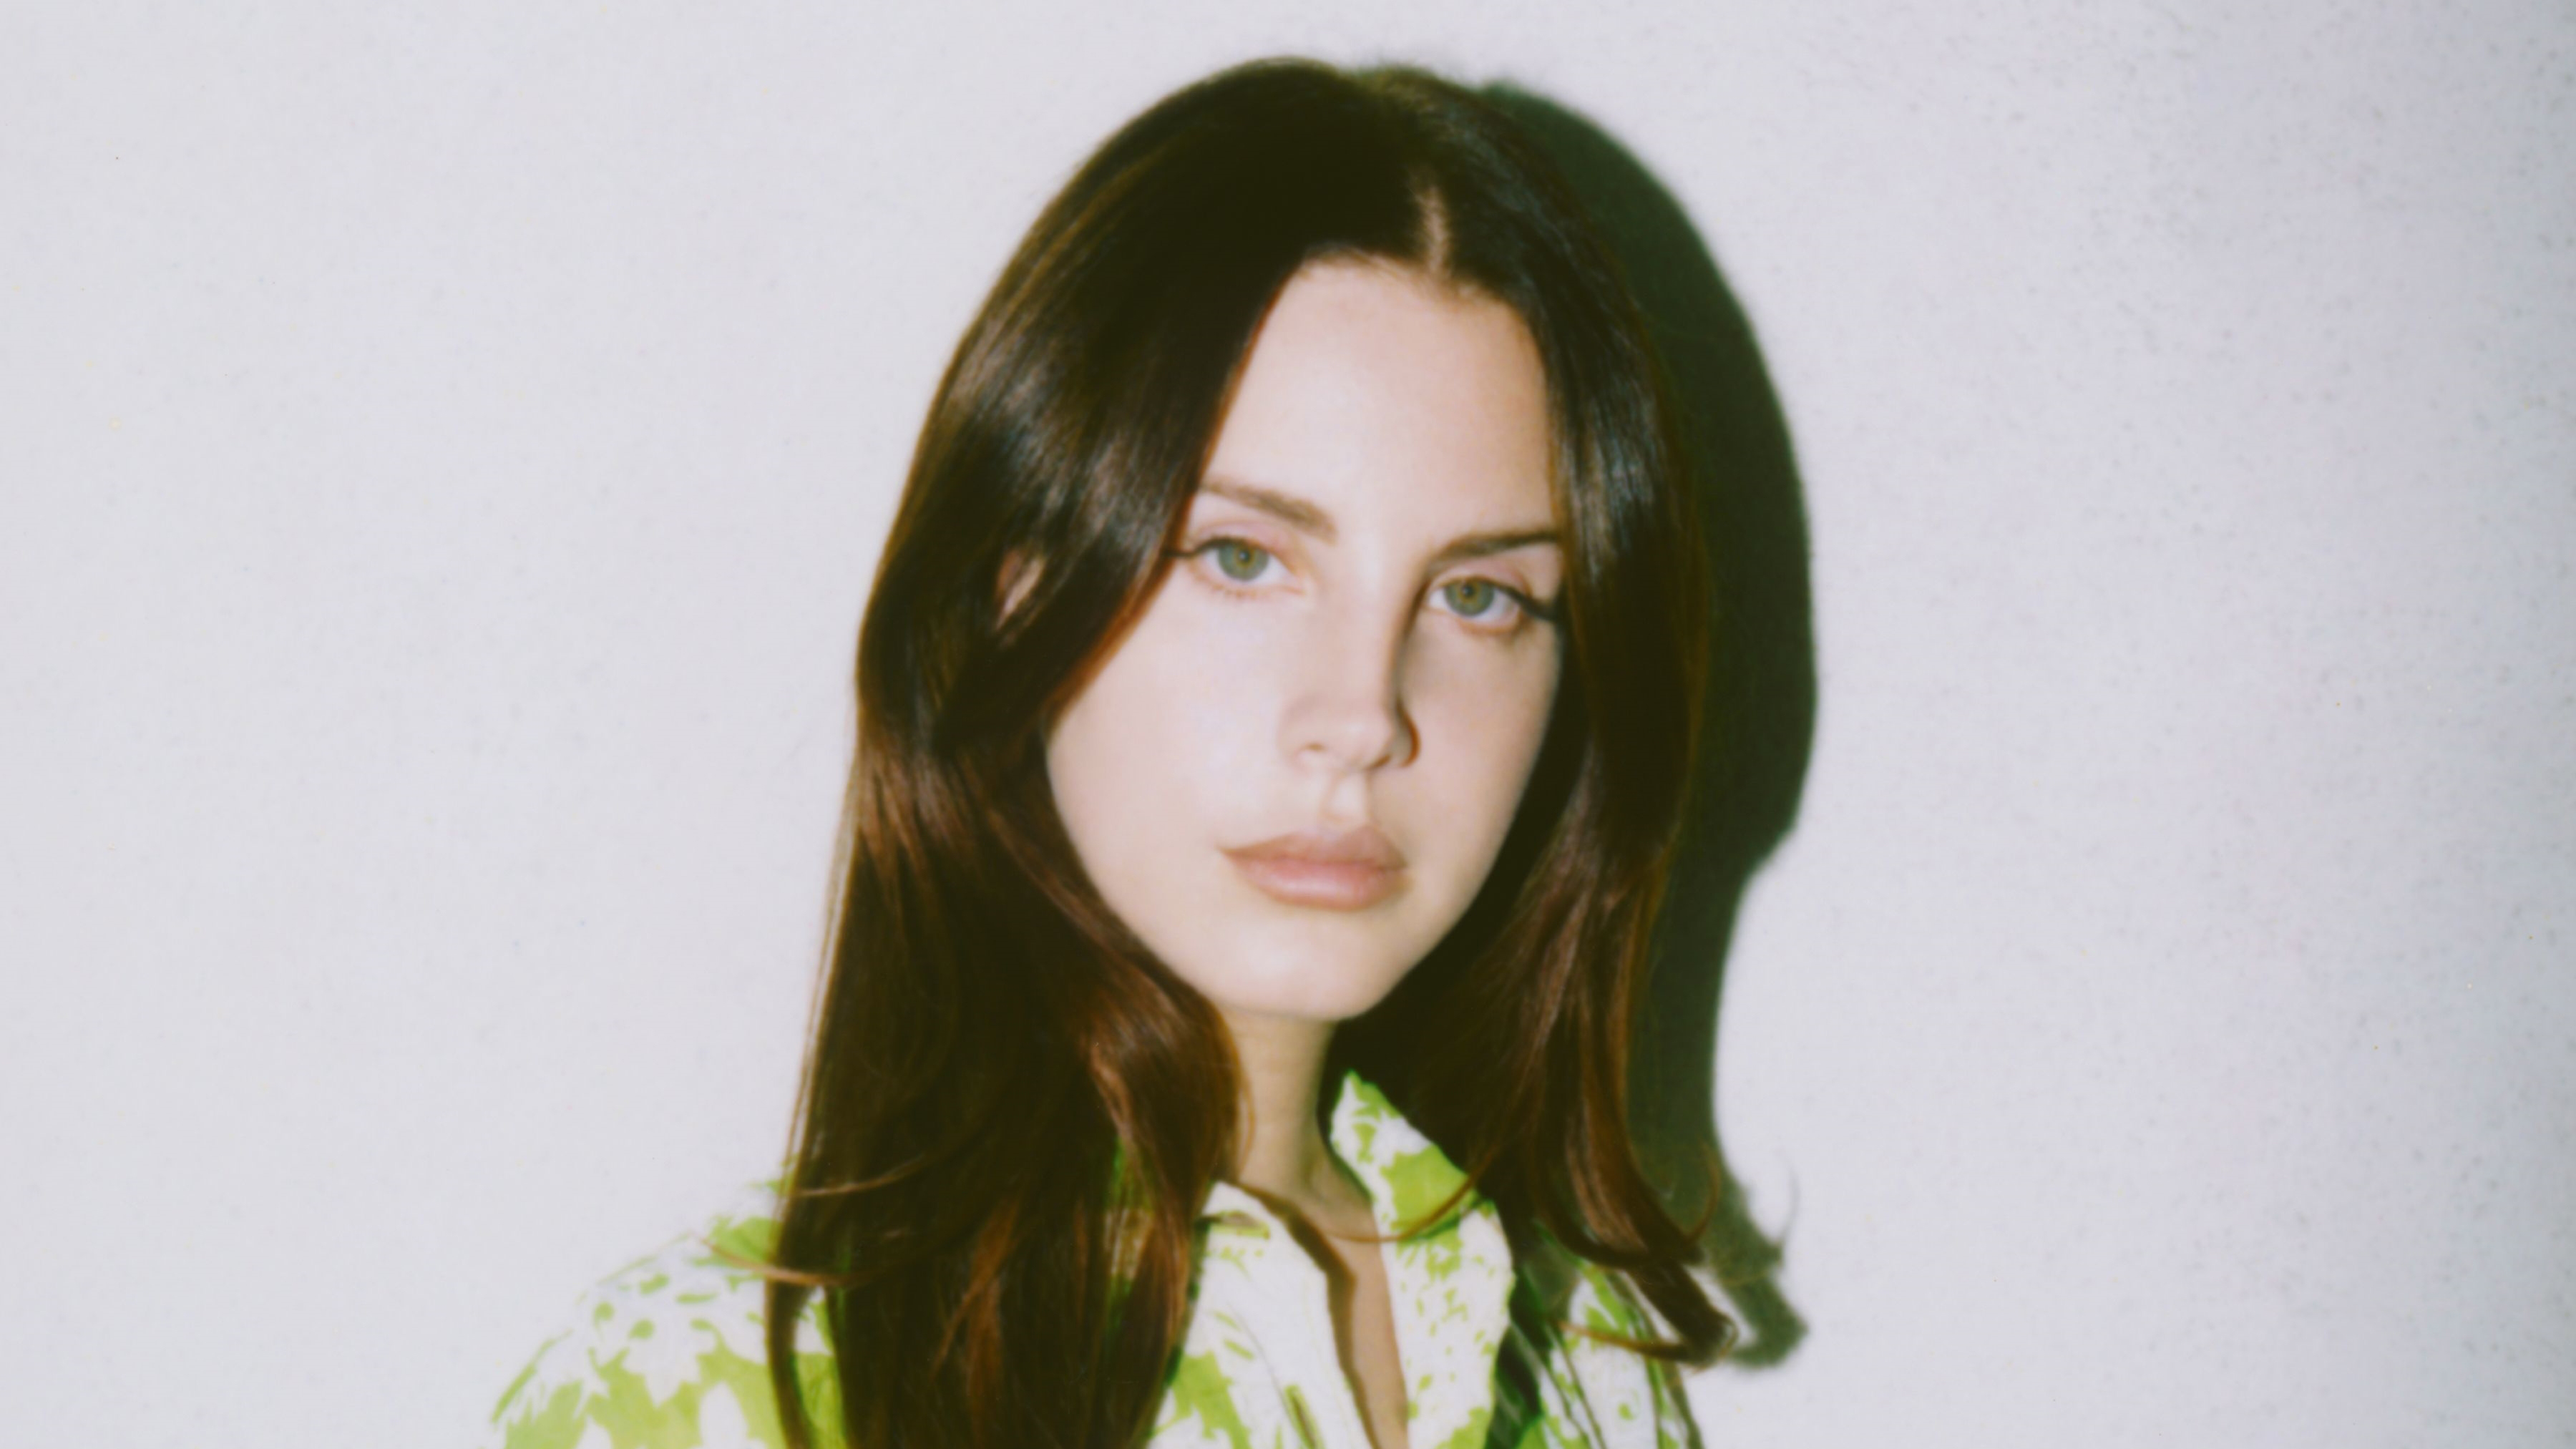 Conheça a nova música e título do novo álbum de Lana Del Rey